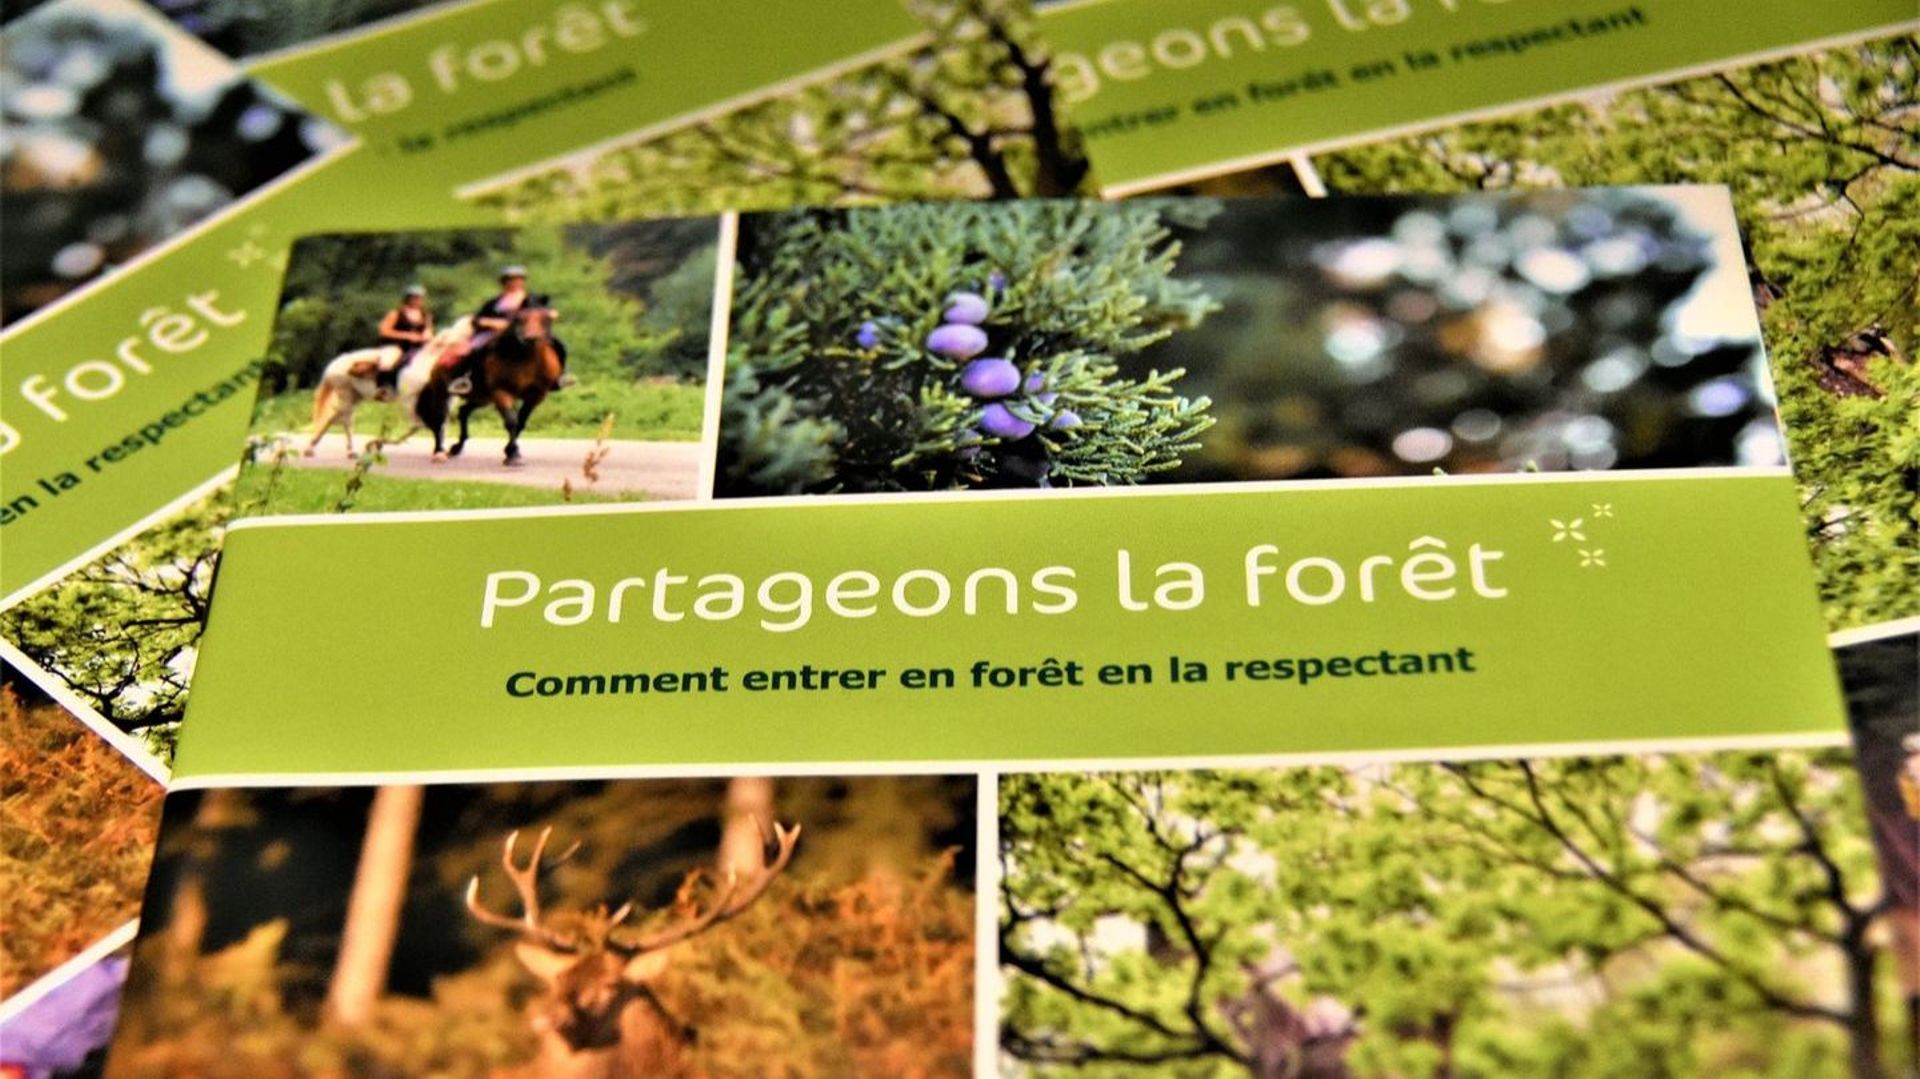 "Partageons la forêt", la brochure disponible dans les offices du tourisme